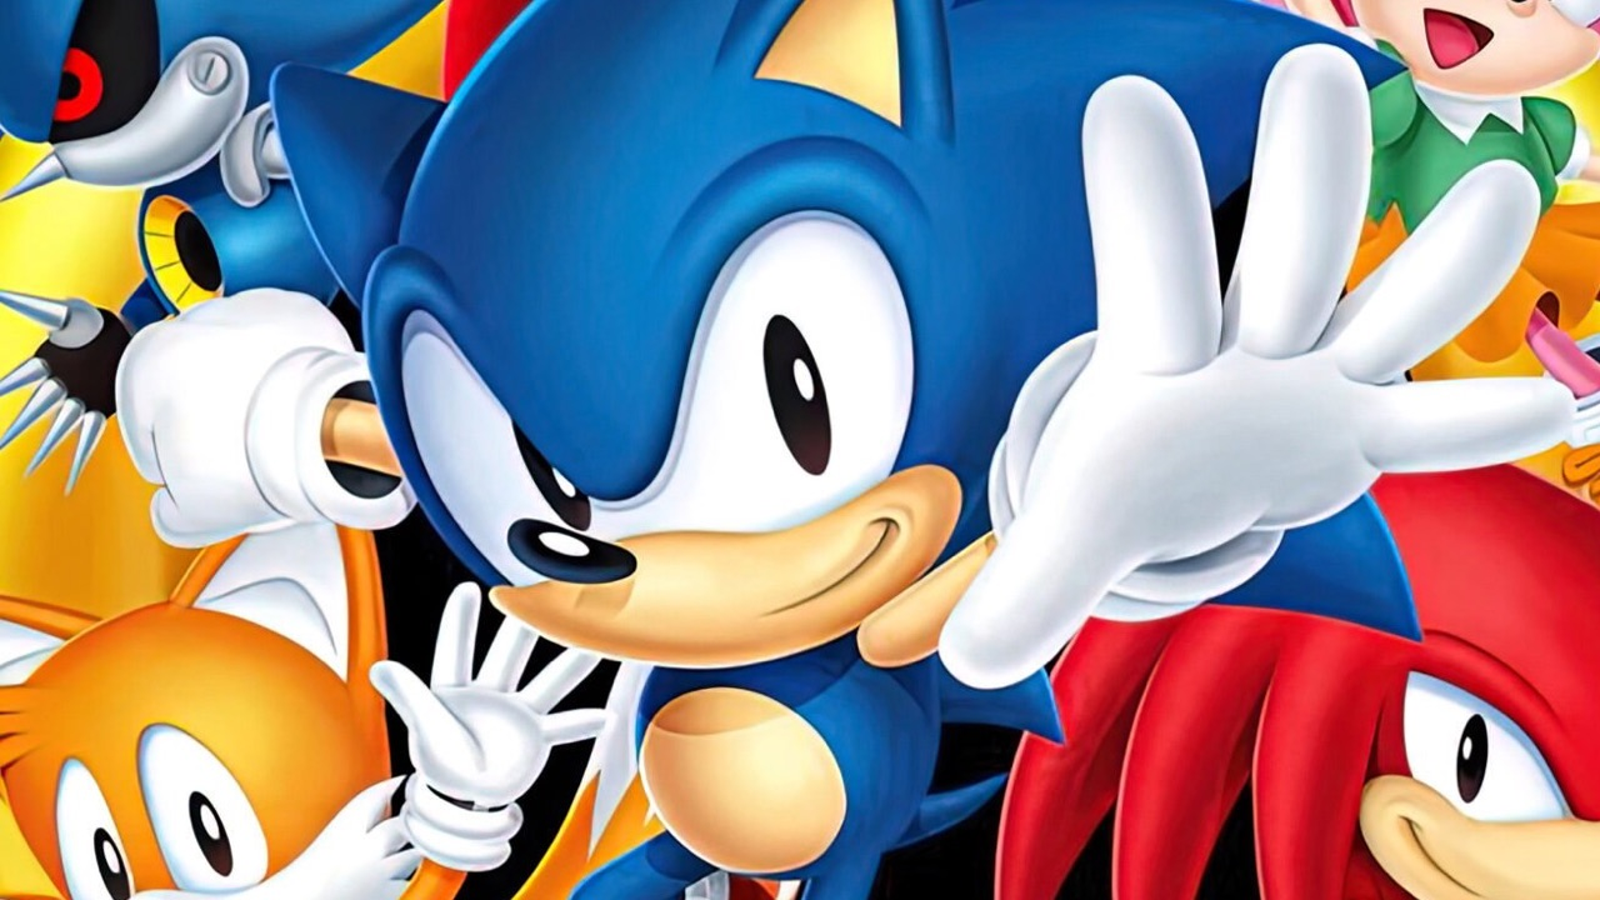 Play Genesis Sonic 2 Heroes Online in your browser 